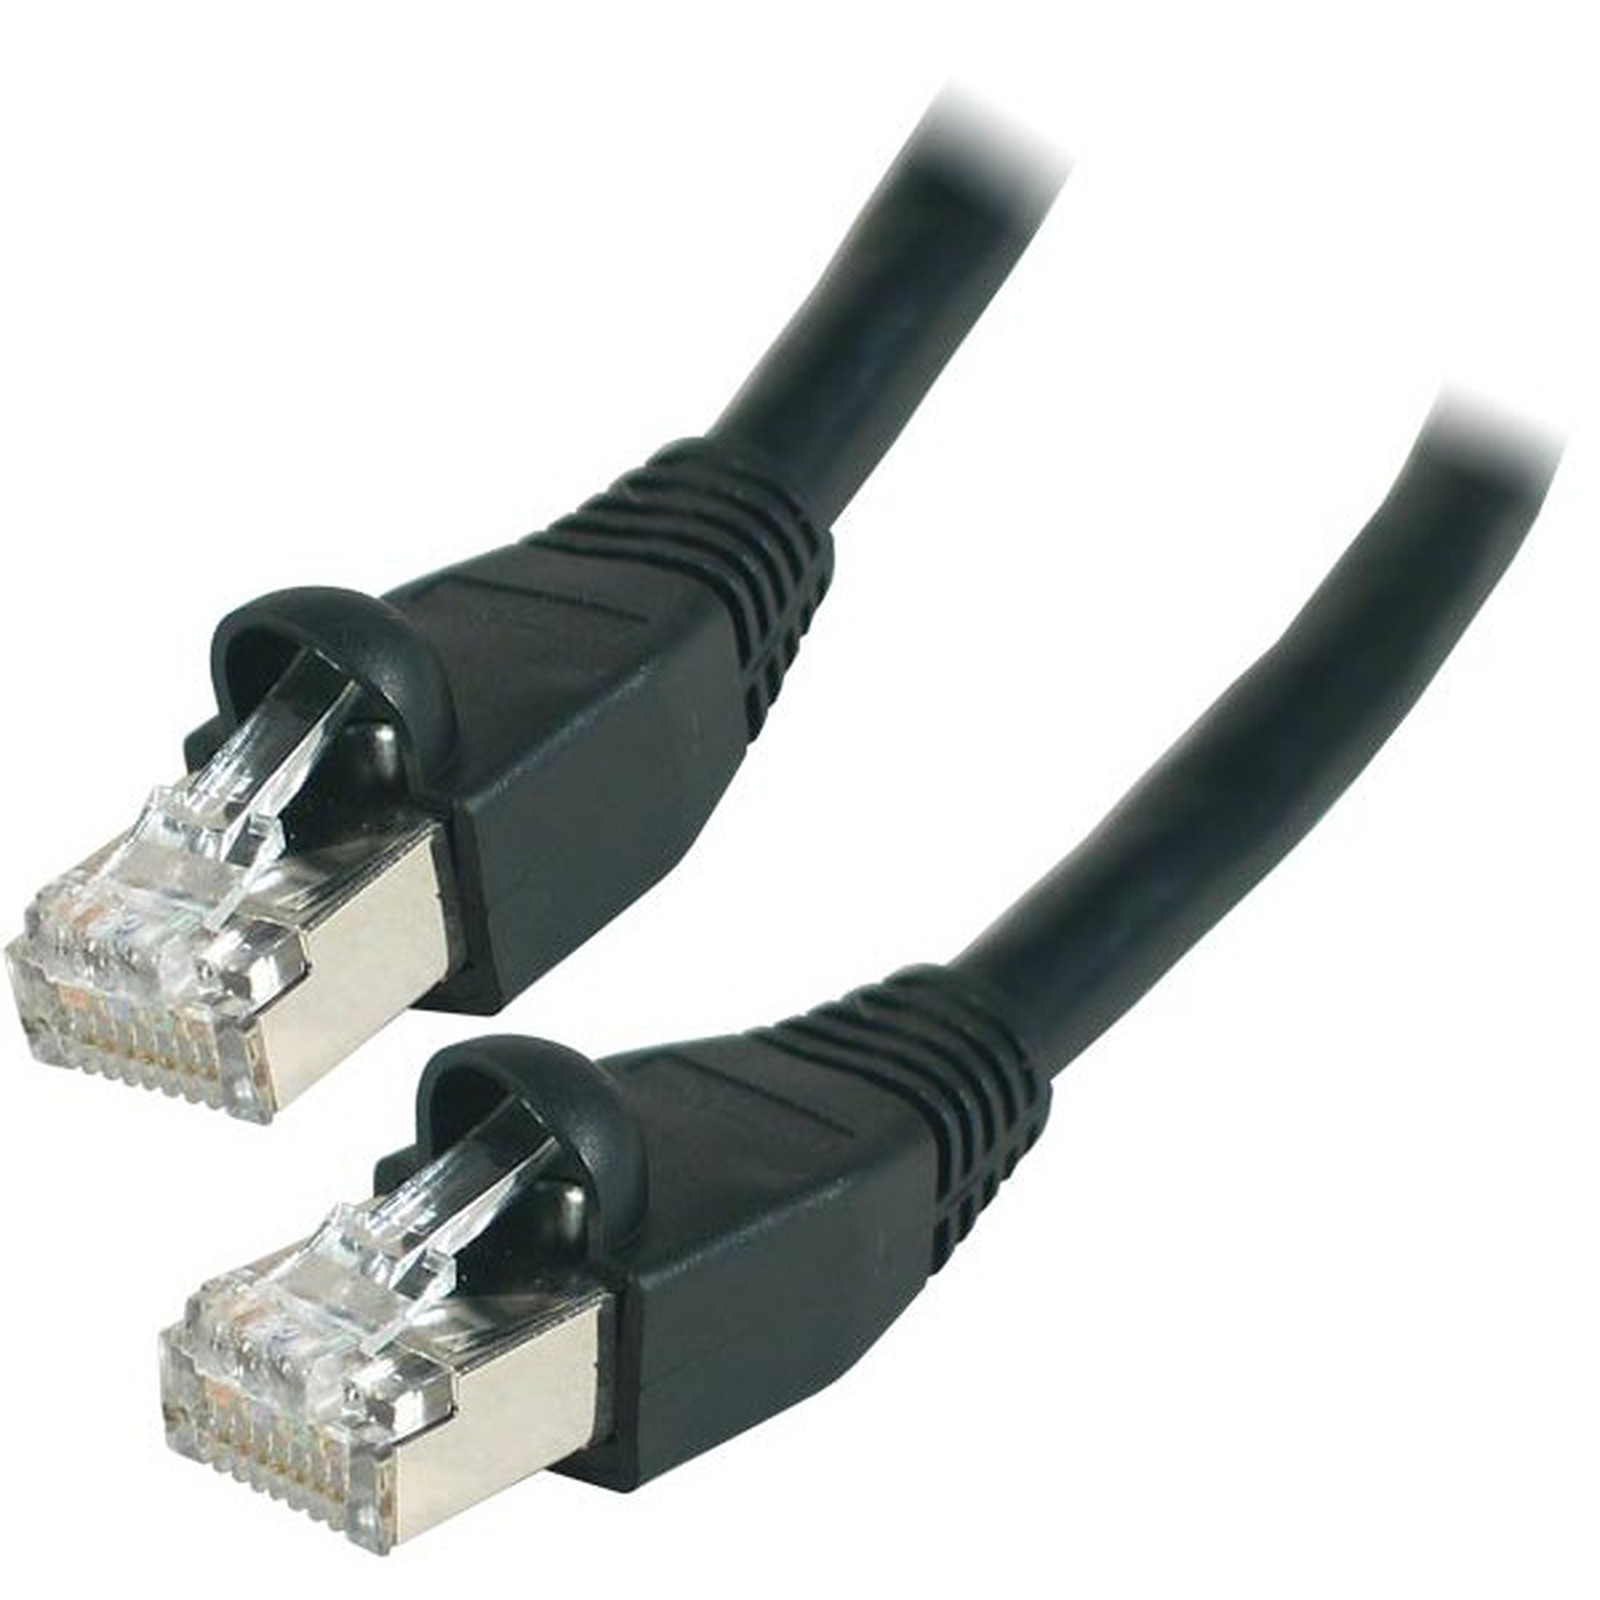 Cable RJ45 categorie 6 S/FTP 0.5 m (Noir) - Cable RJ45 Generique